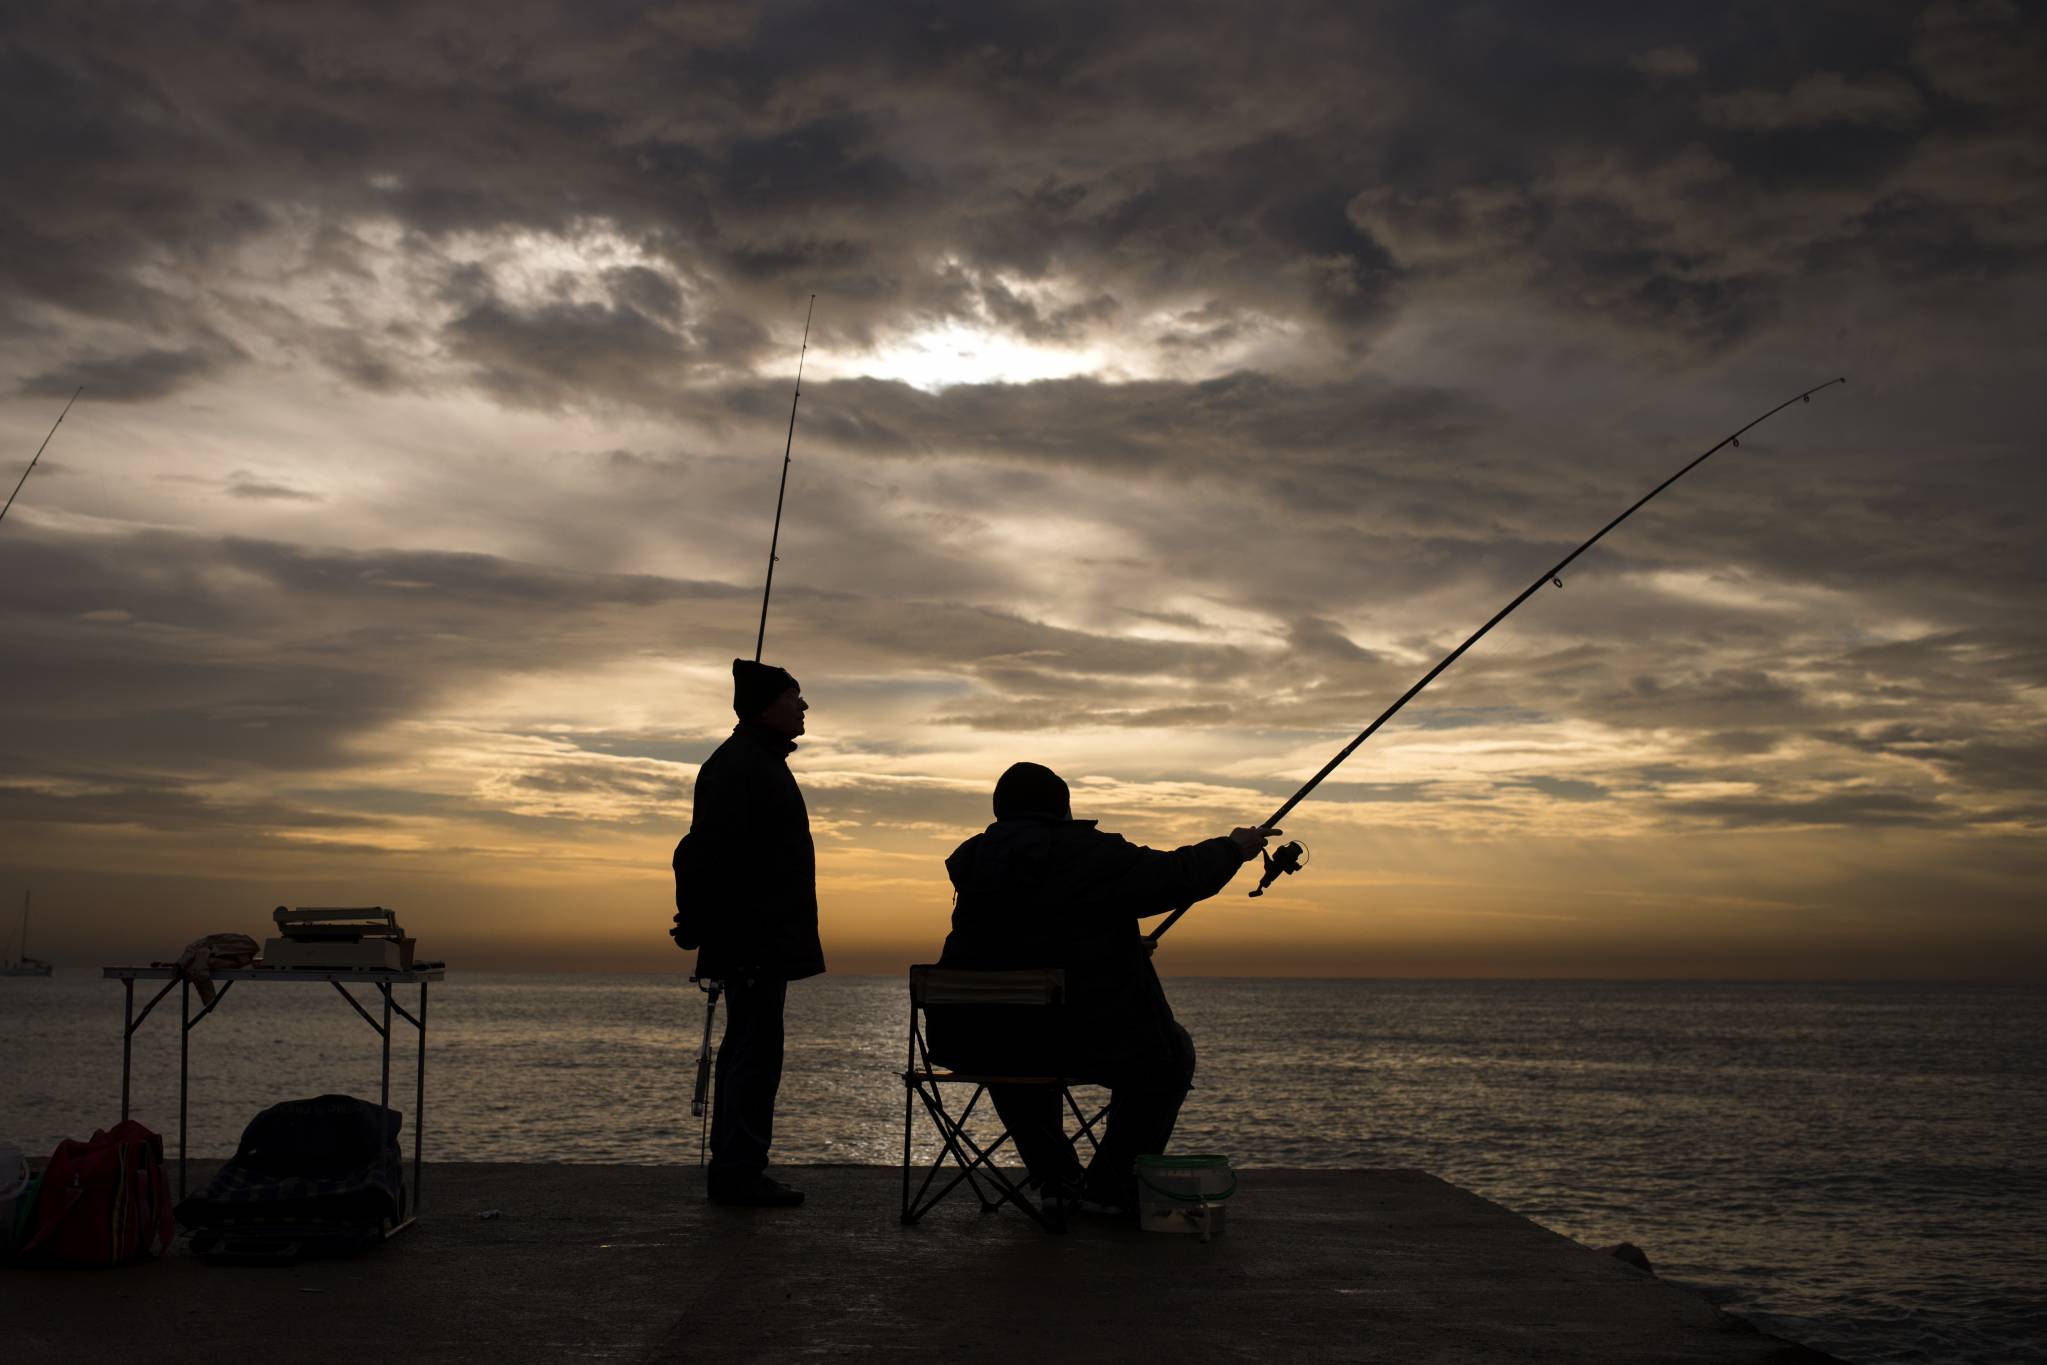 تفسير حلم صيد السمك للمتزوجة